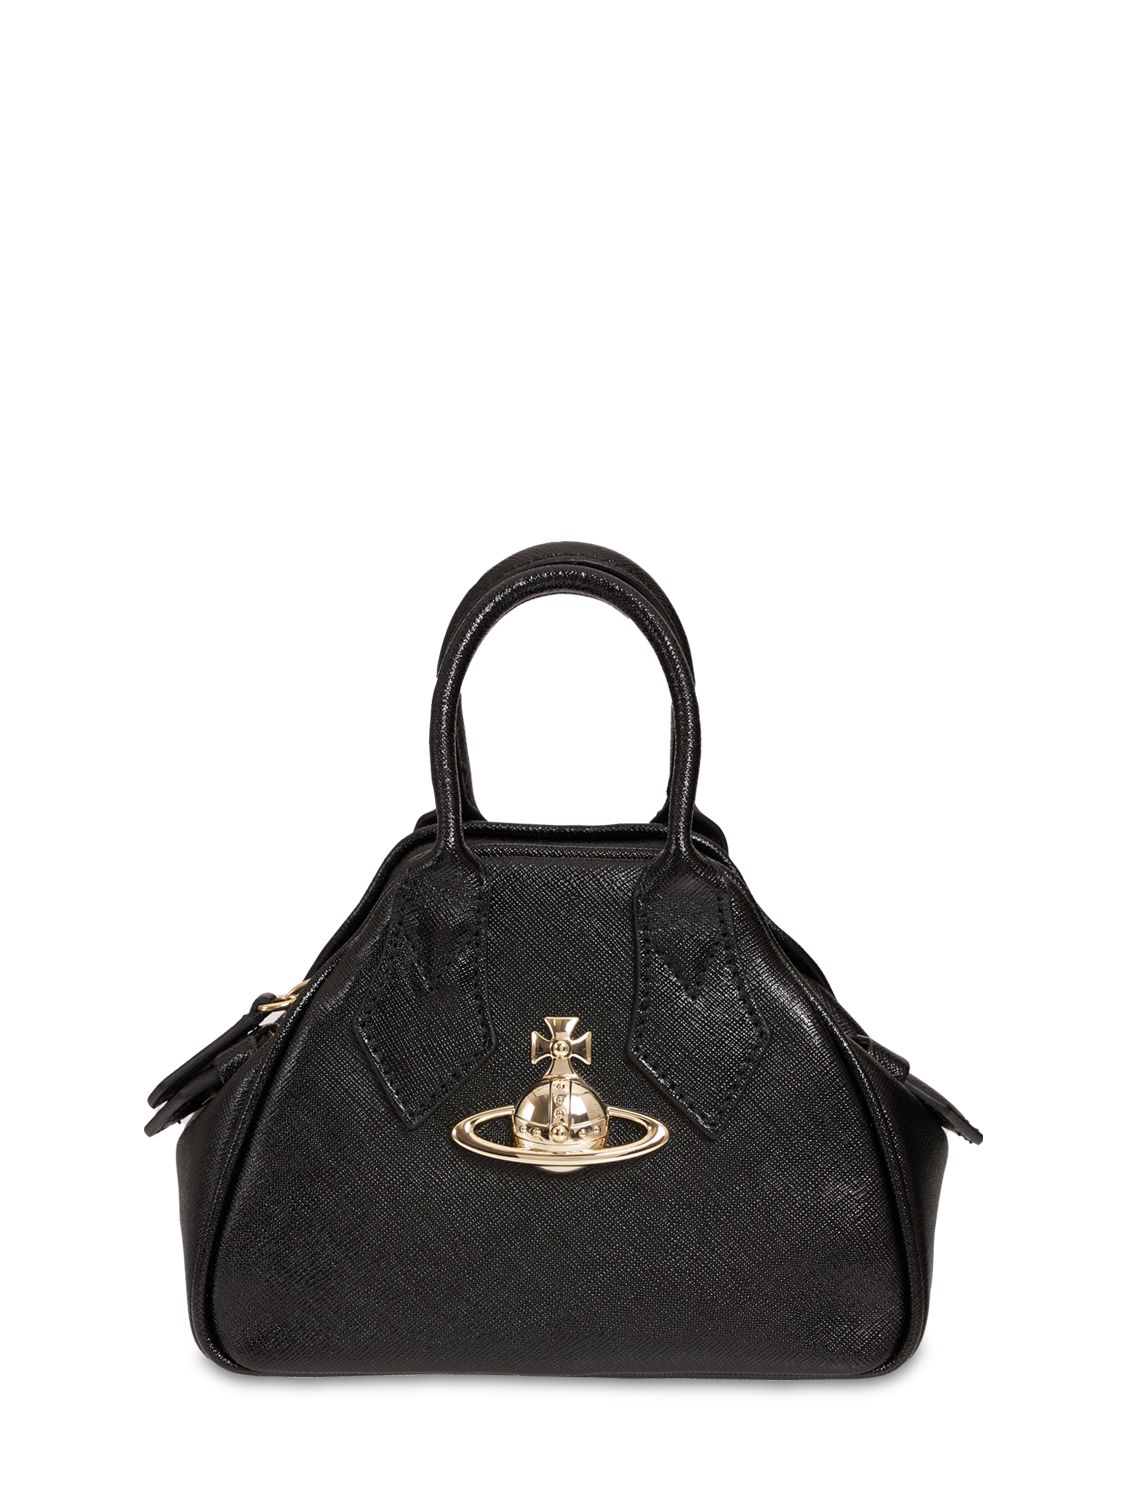 Vivienne Westwood Mini Yasmine Saffiano Leather Bag In Schwarz